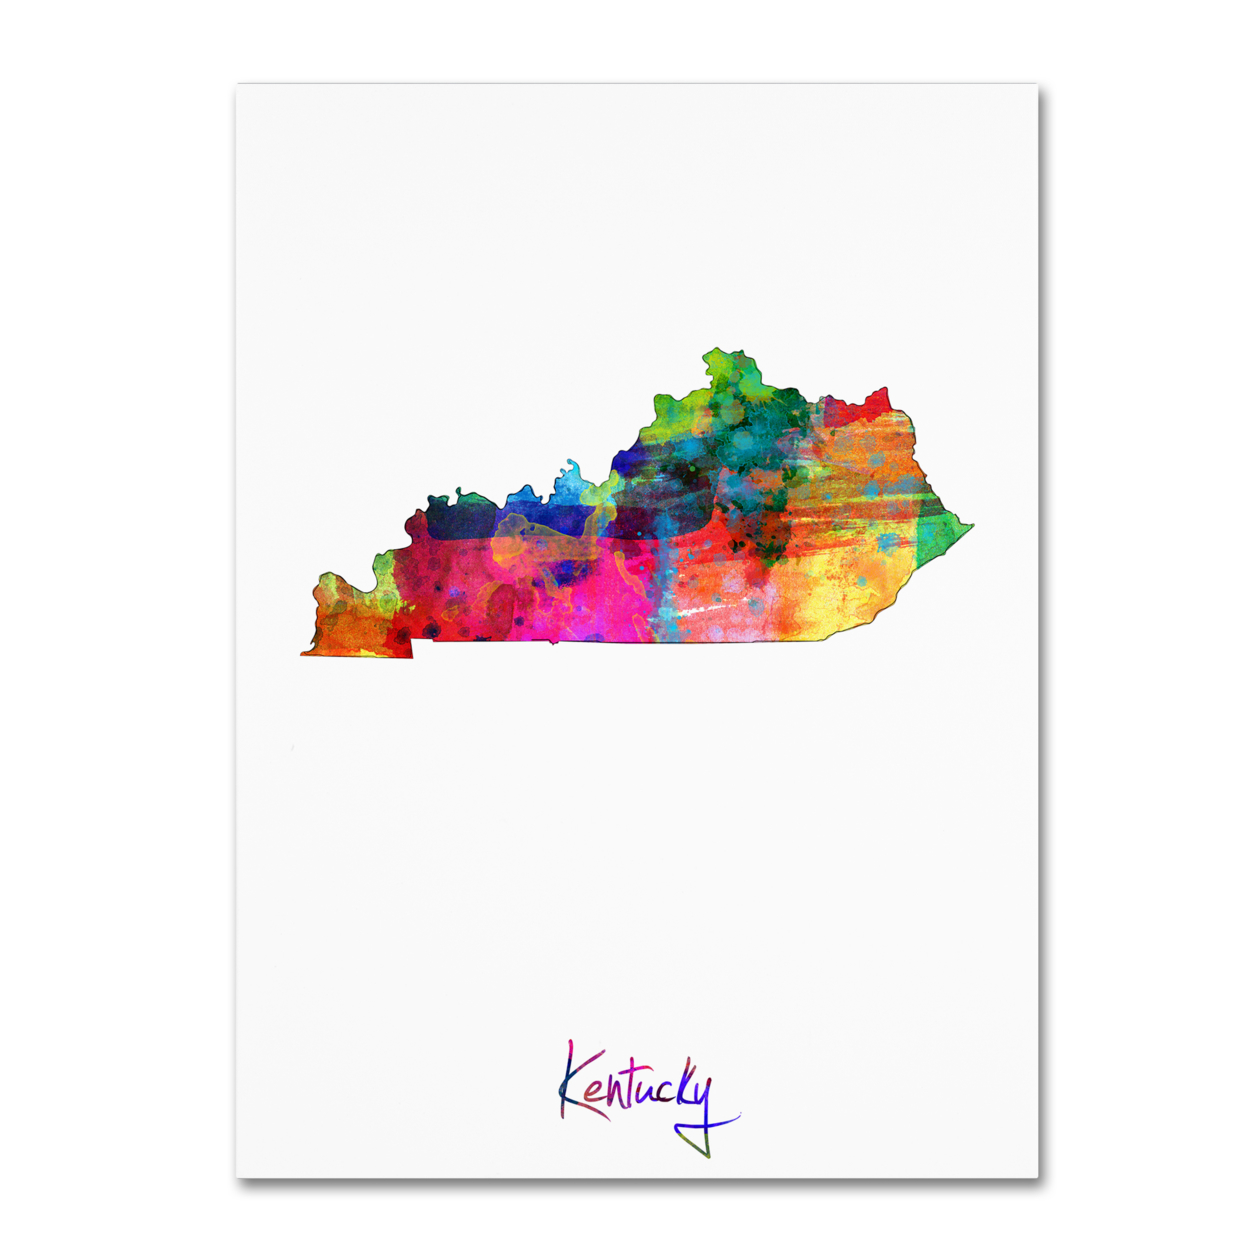 Michael Tompsett 'Kentucky Map' Canvas Wall Art 35 X 47 Inches